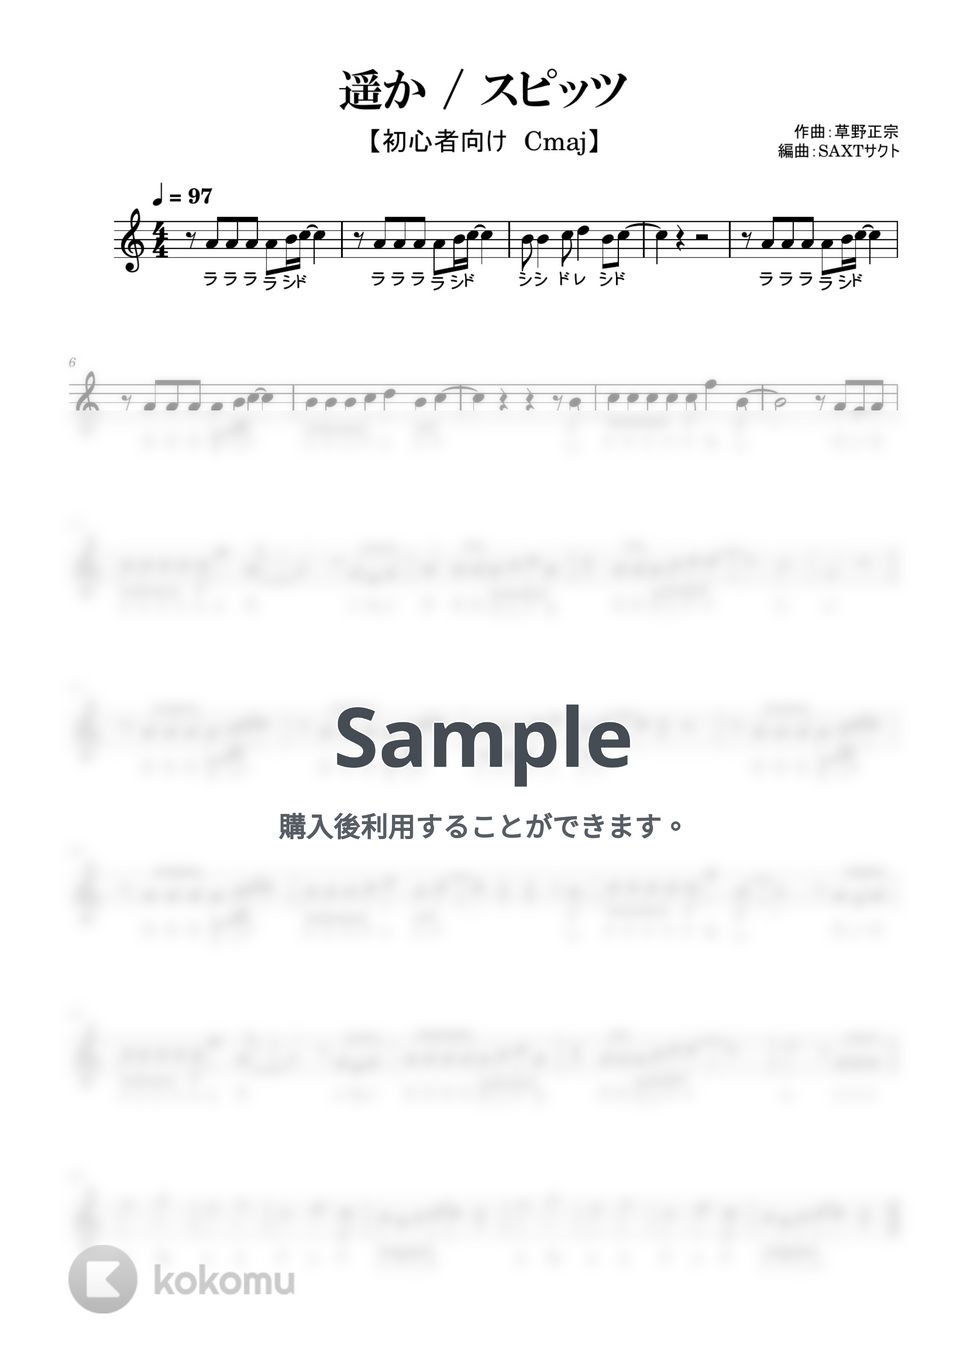 スピッツ - 遥か (めちゃラク譜) by SAXT